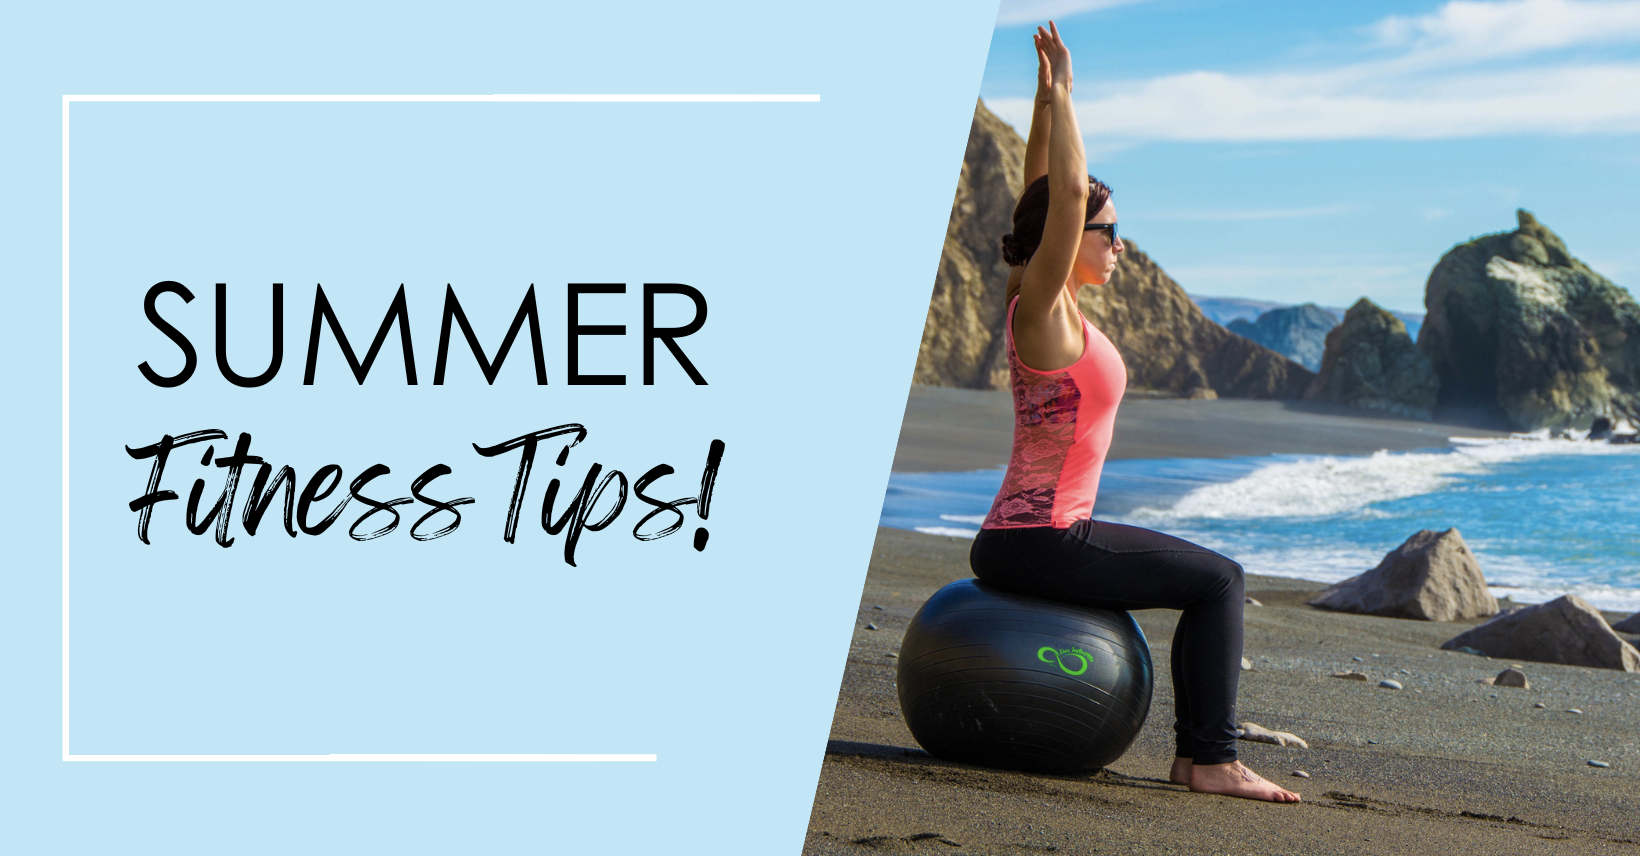 Summer Fitness Tips!